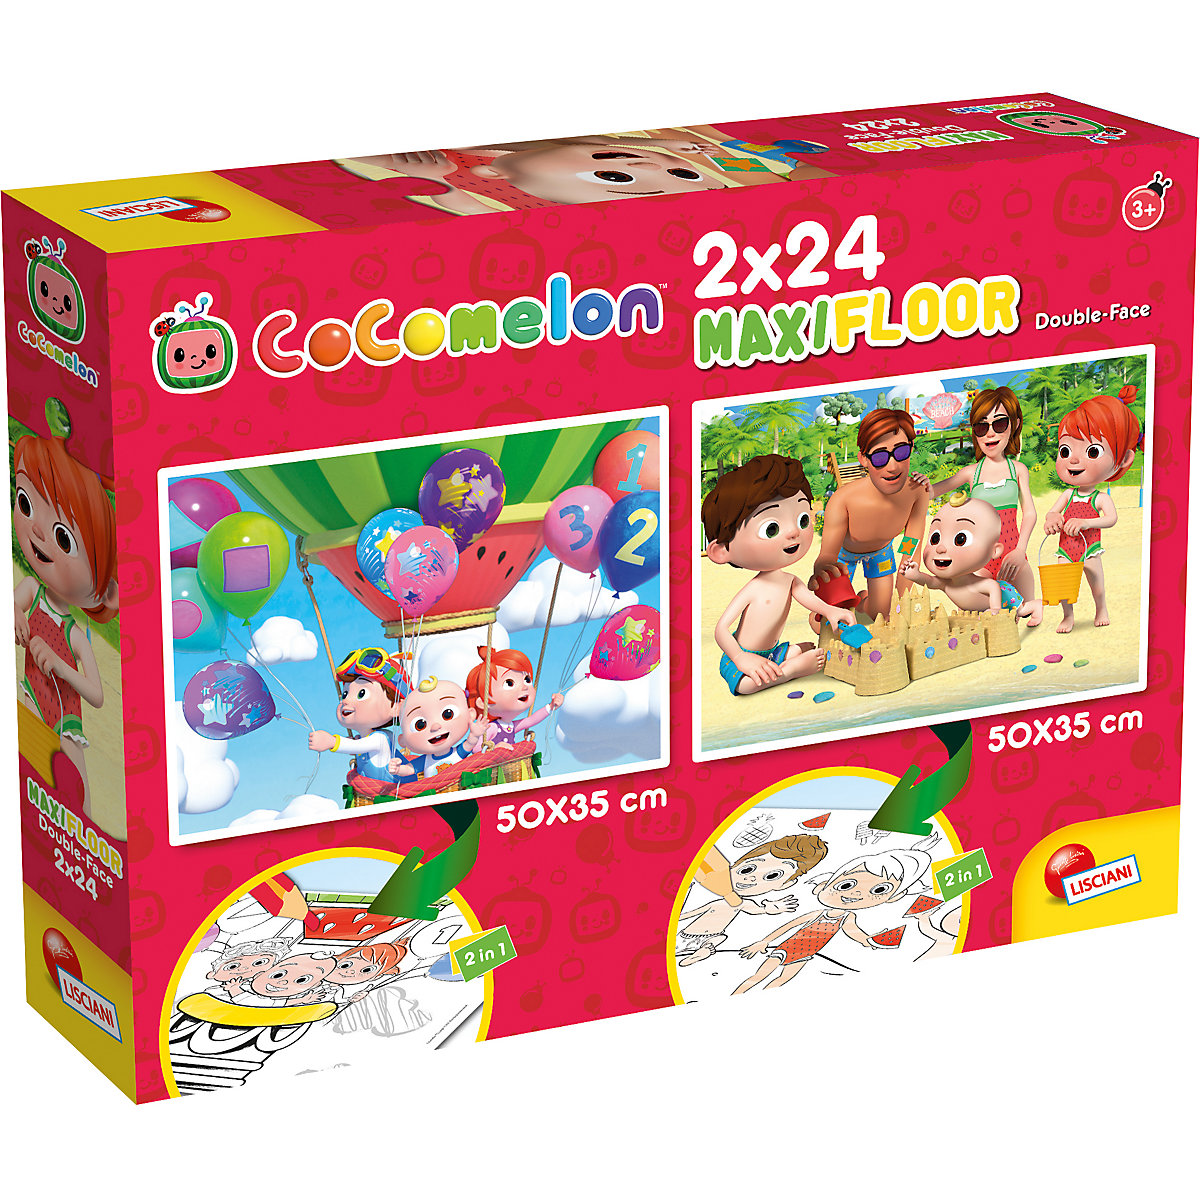 Cocomelon Puzzle doppelseitig Maxifloor Sei nett zu Allen! 2 x 24 Teile